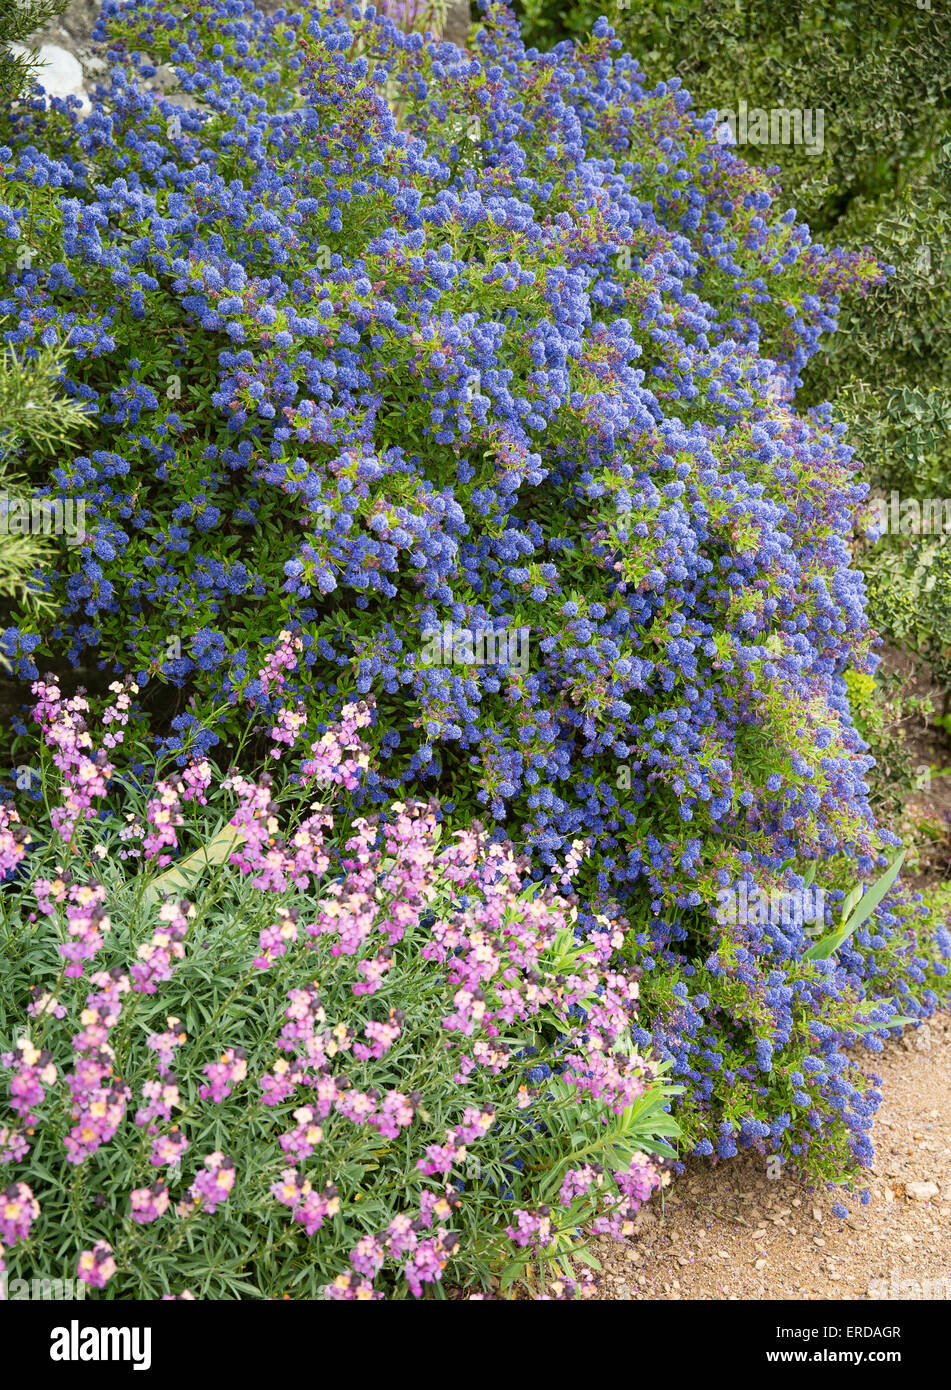 Ceanothus azul o rosa lila y californiano Erysimum flores en un jardín inglés maceteros Foto de stock